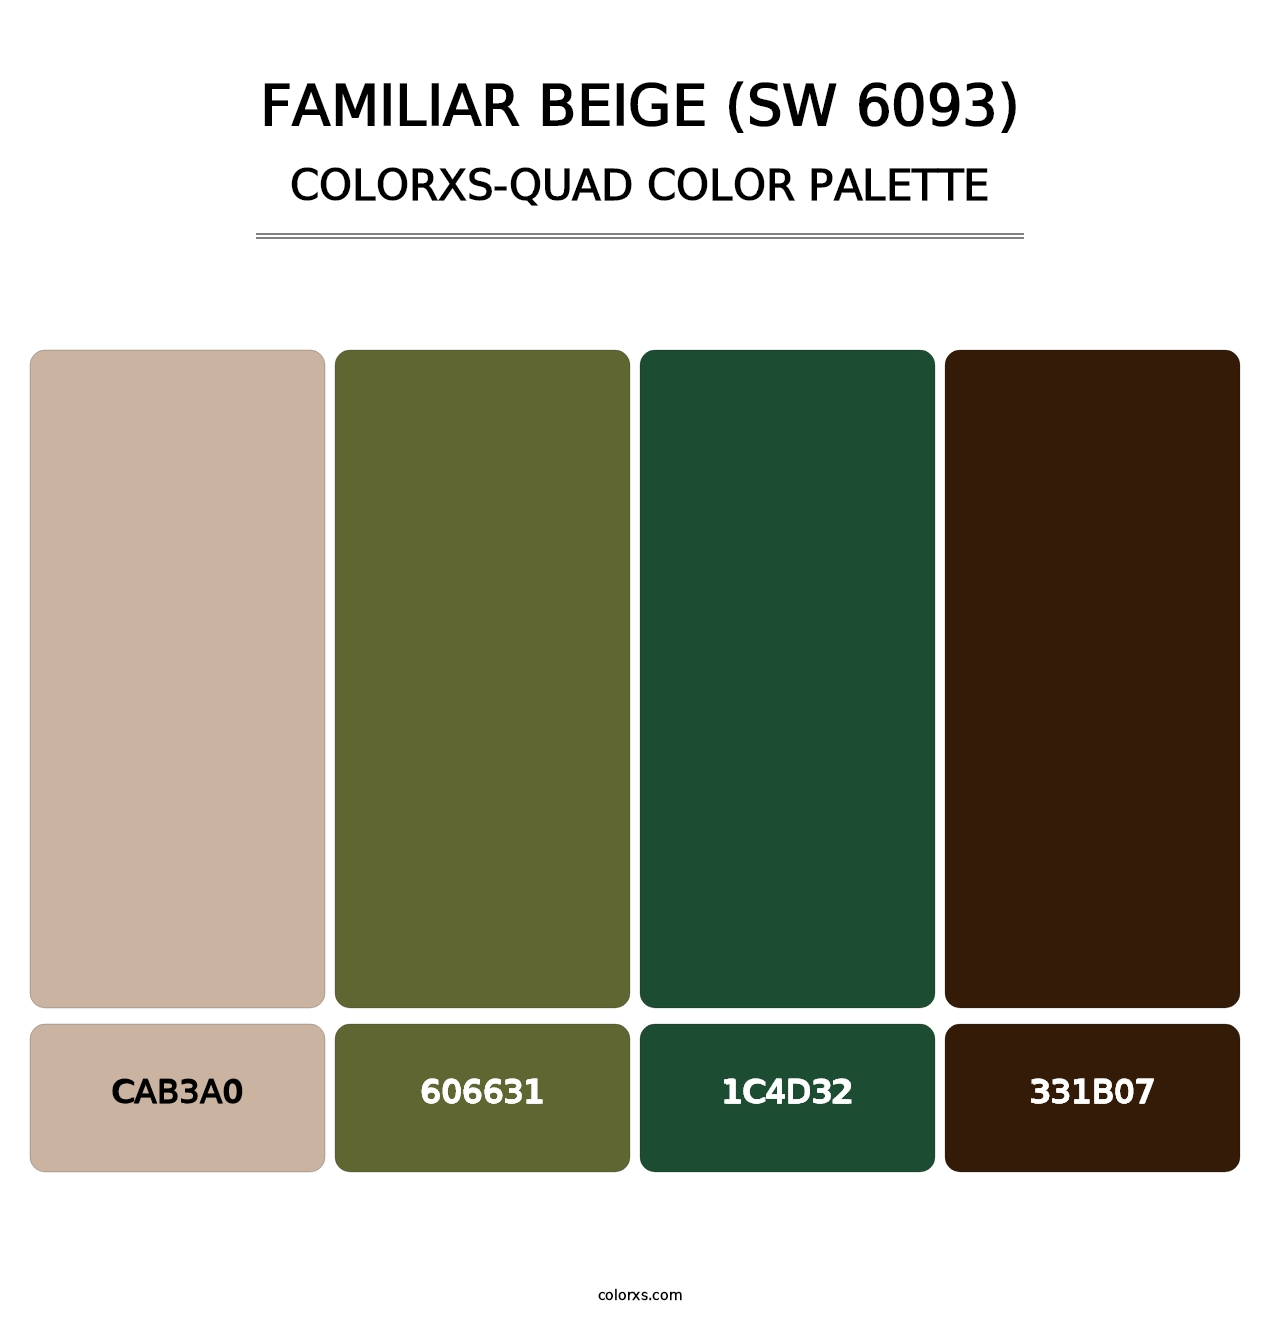 Familiar Beige (SW 6093) - Colorxs Quad Palette